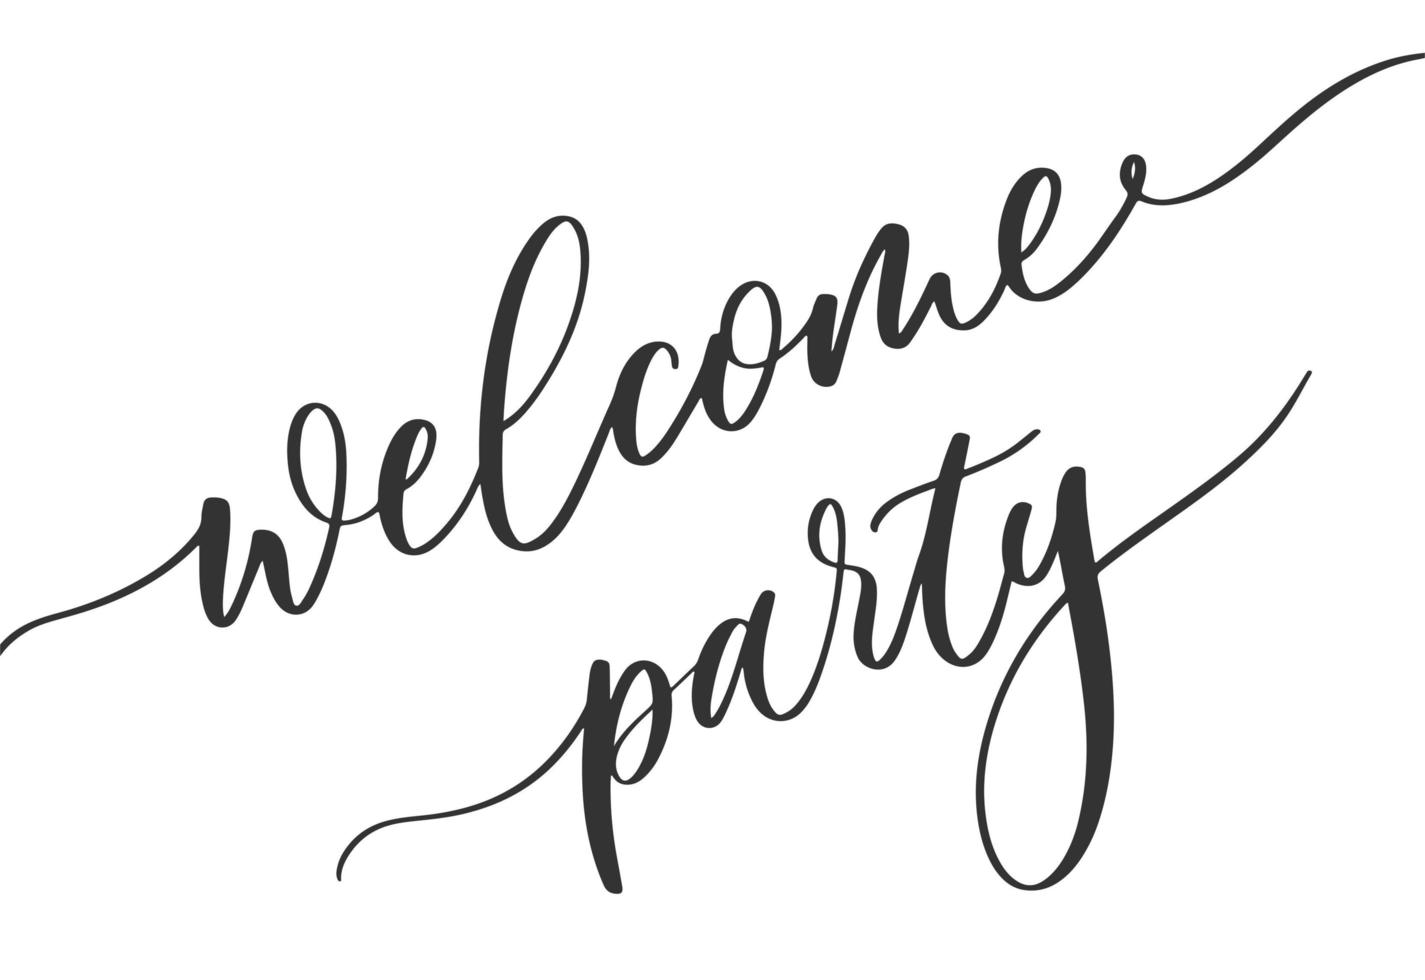 festa de boas vindas. caligrafia para cartão de convite, banner ou cartaz. elemento de vetor de letras de design gráfico. decoração de convite de festa de boas-vindas escrita à mão.